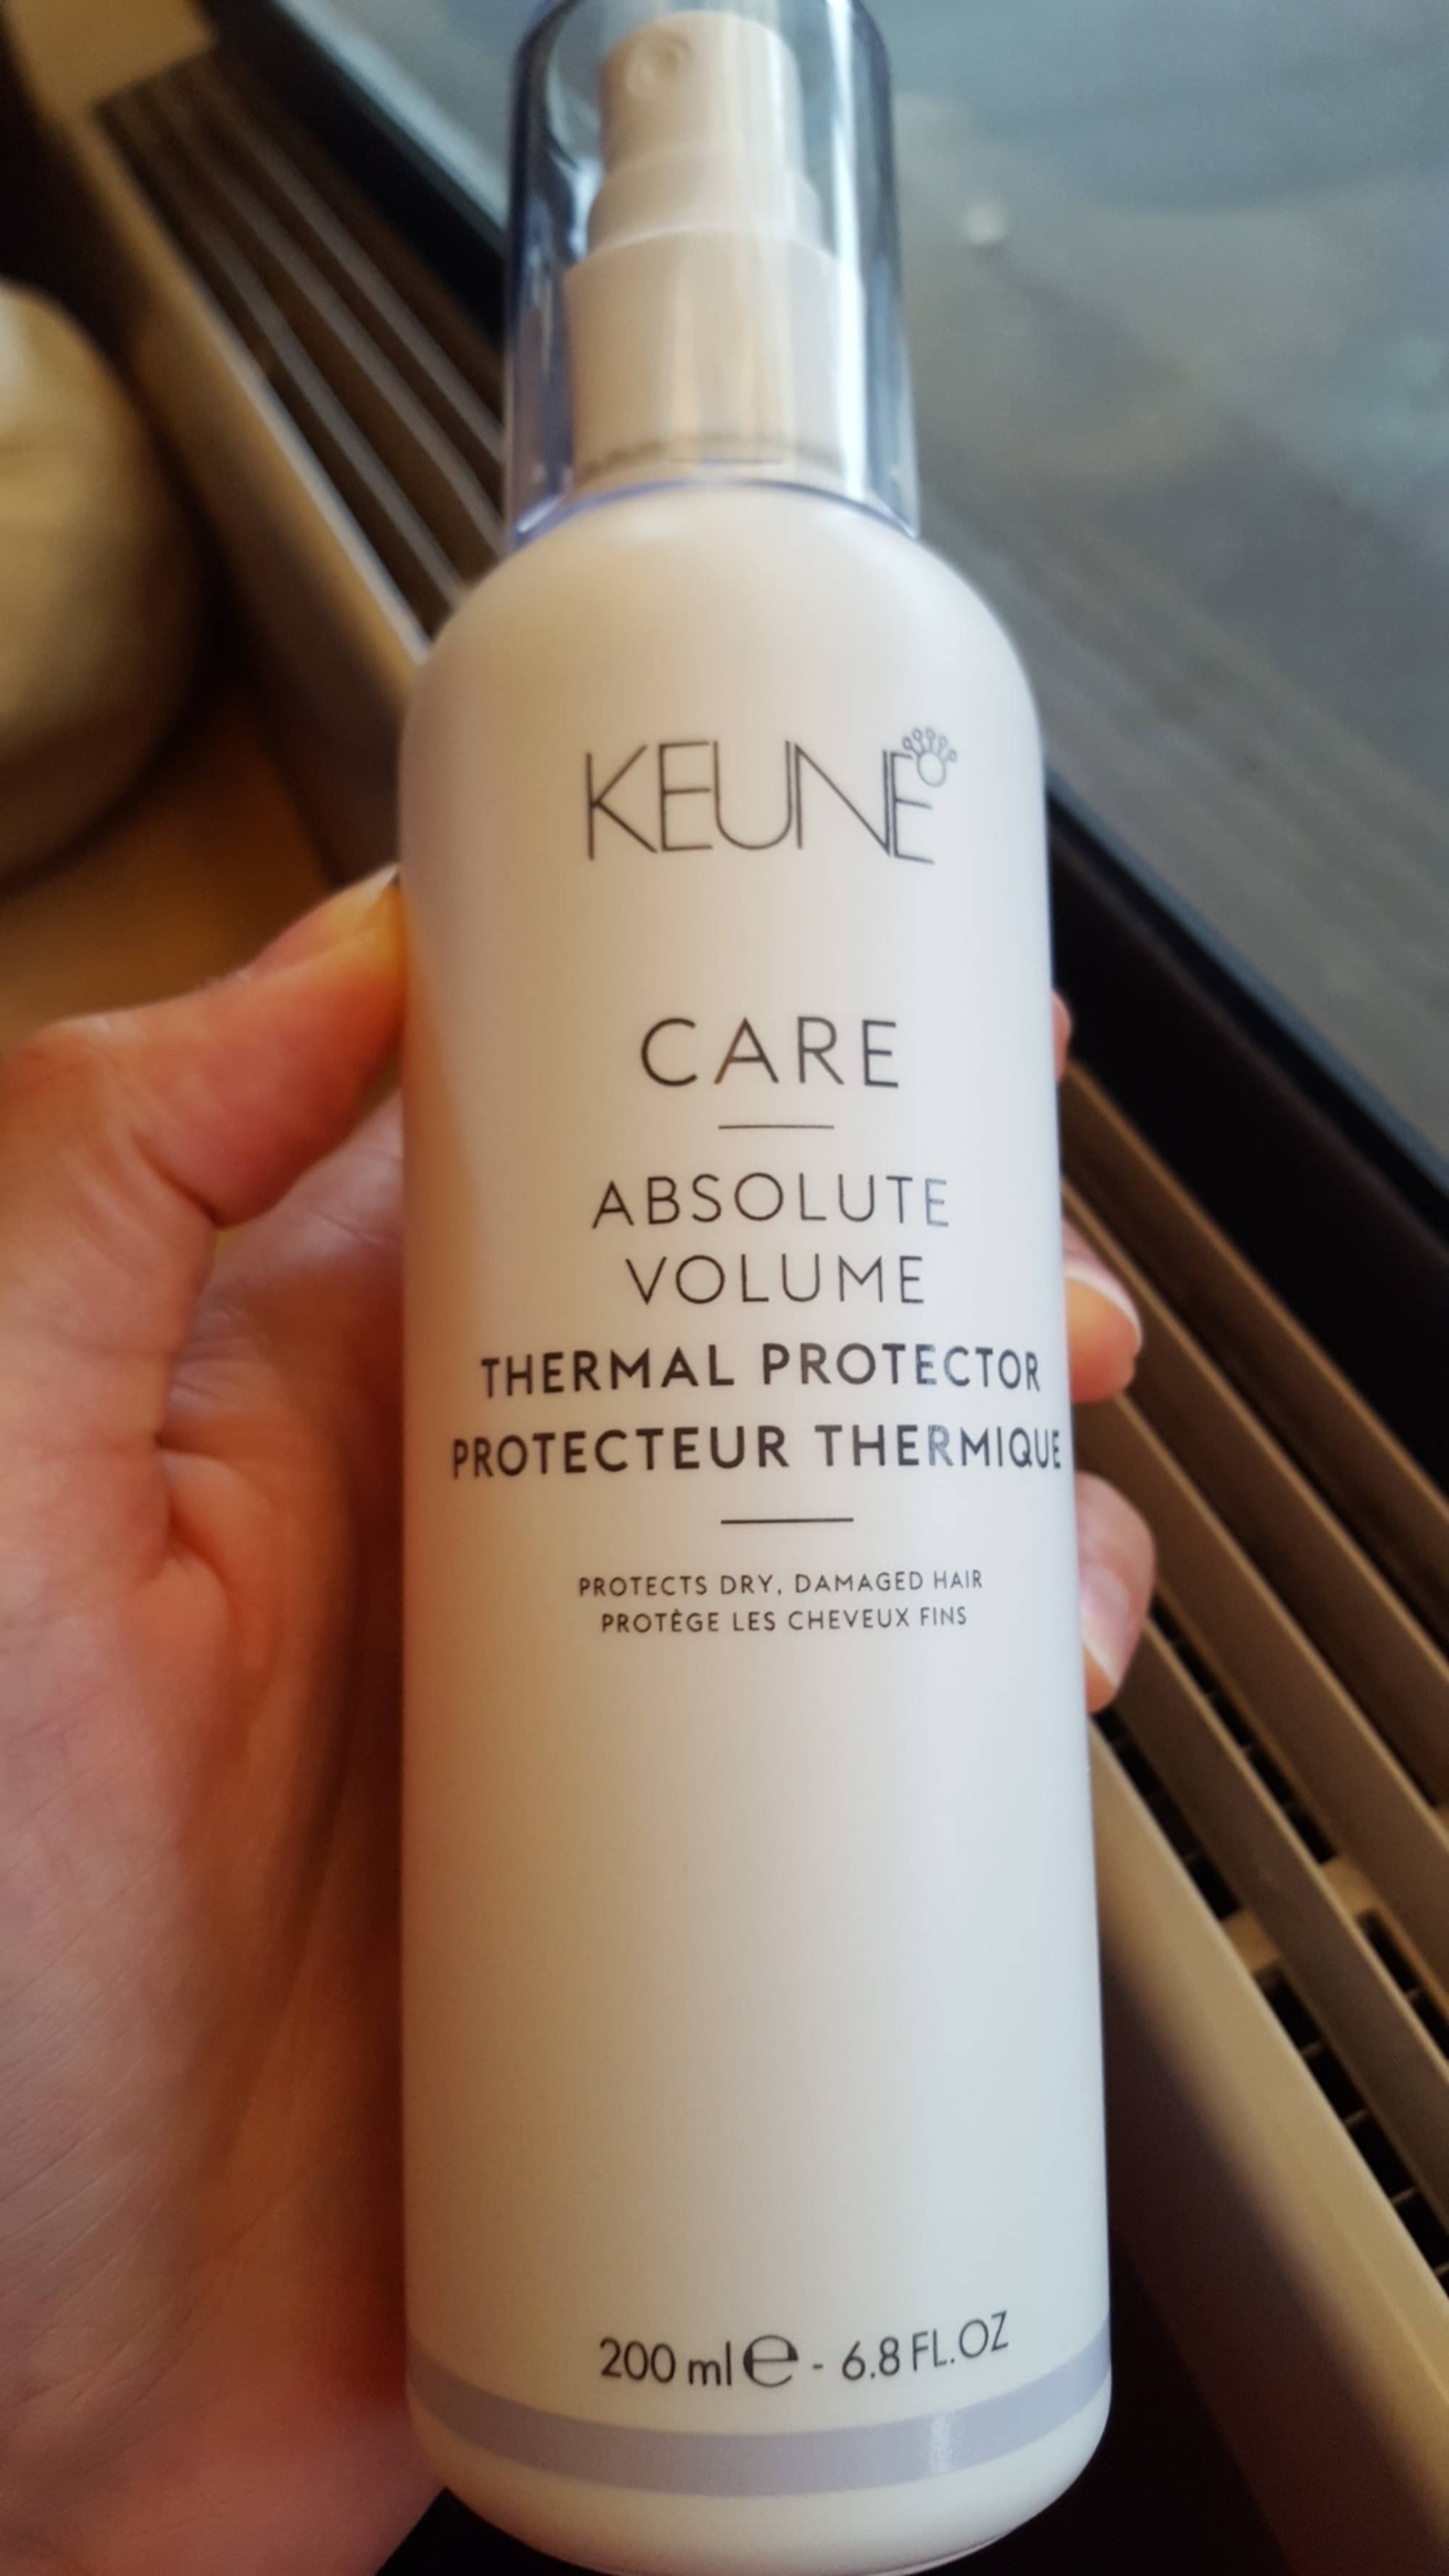 KEUNE - Care absolute volume - Protecteur thermique